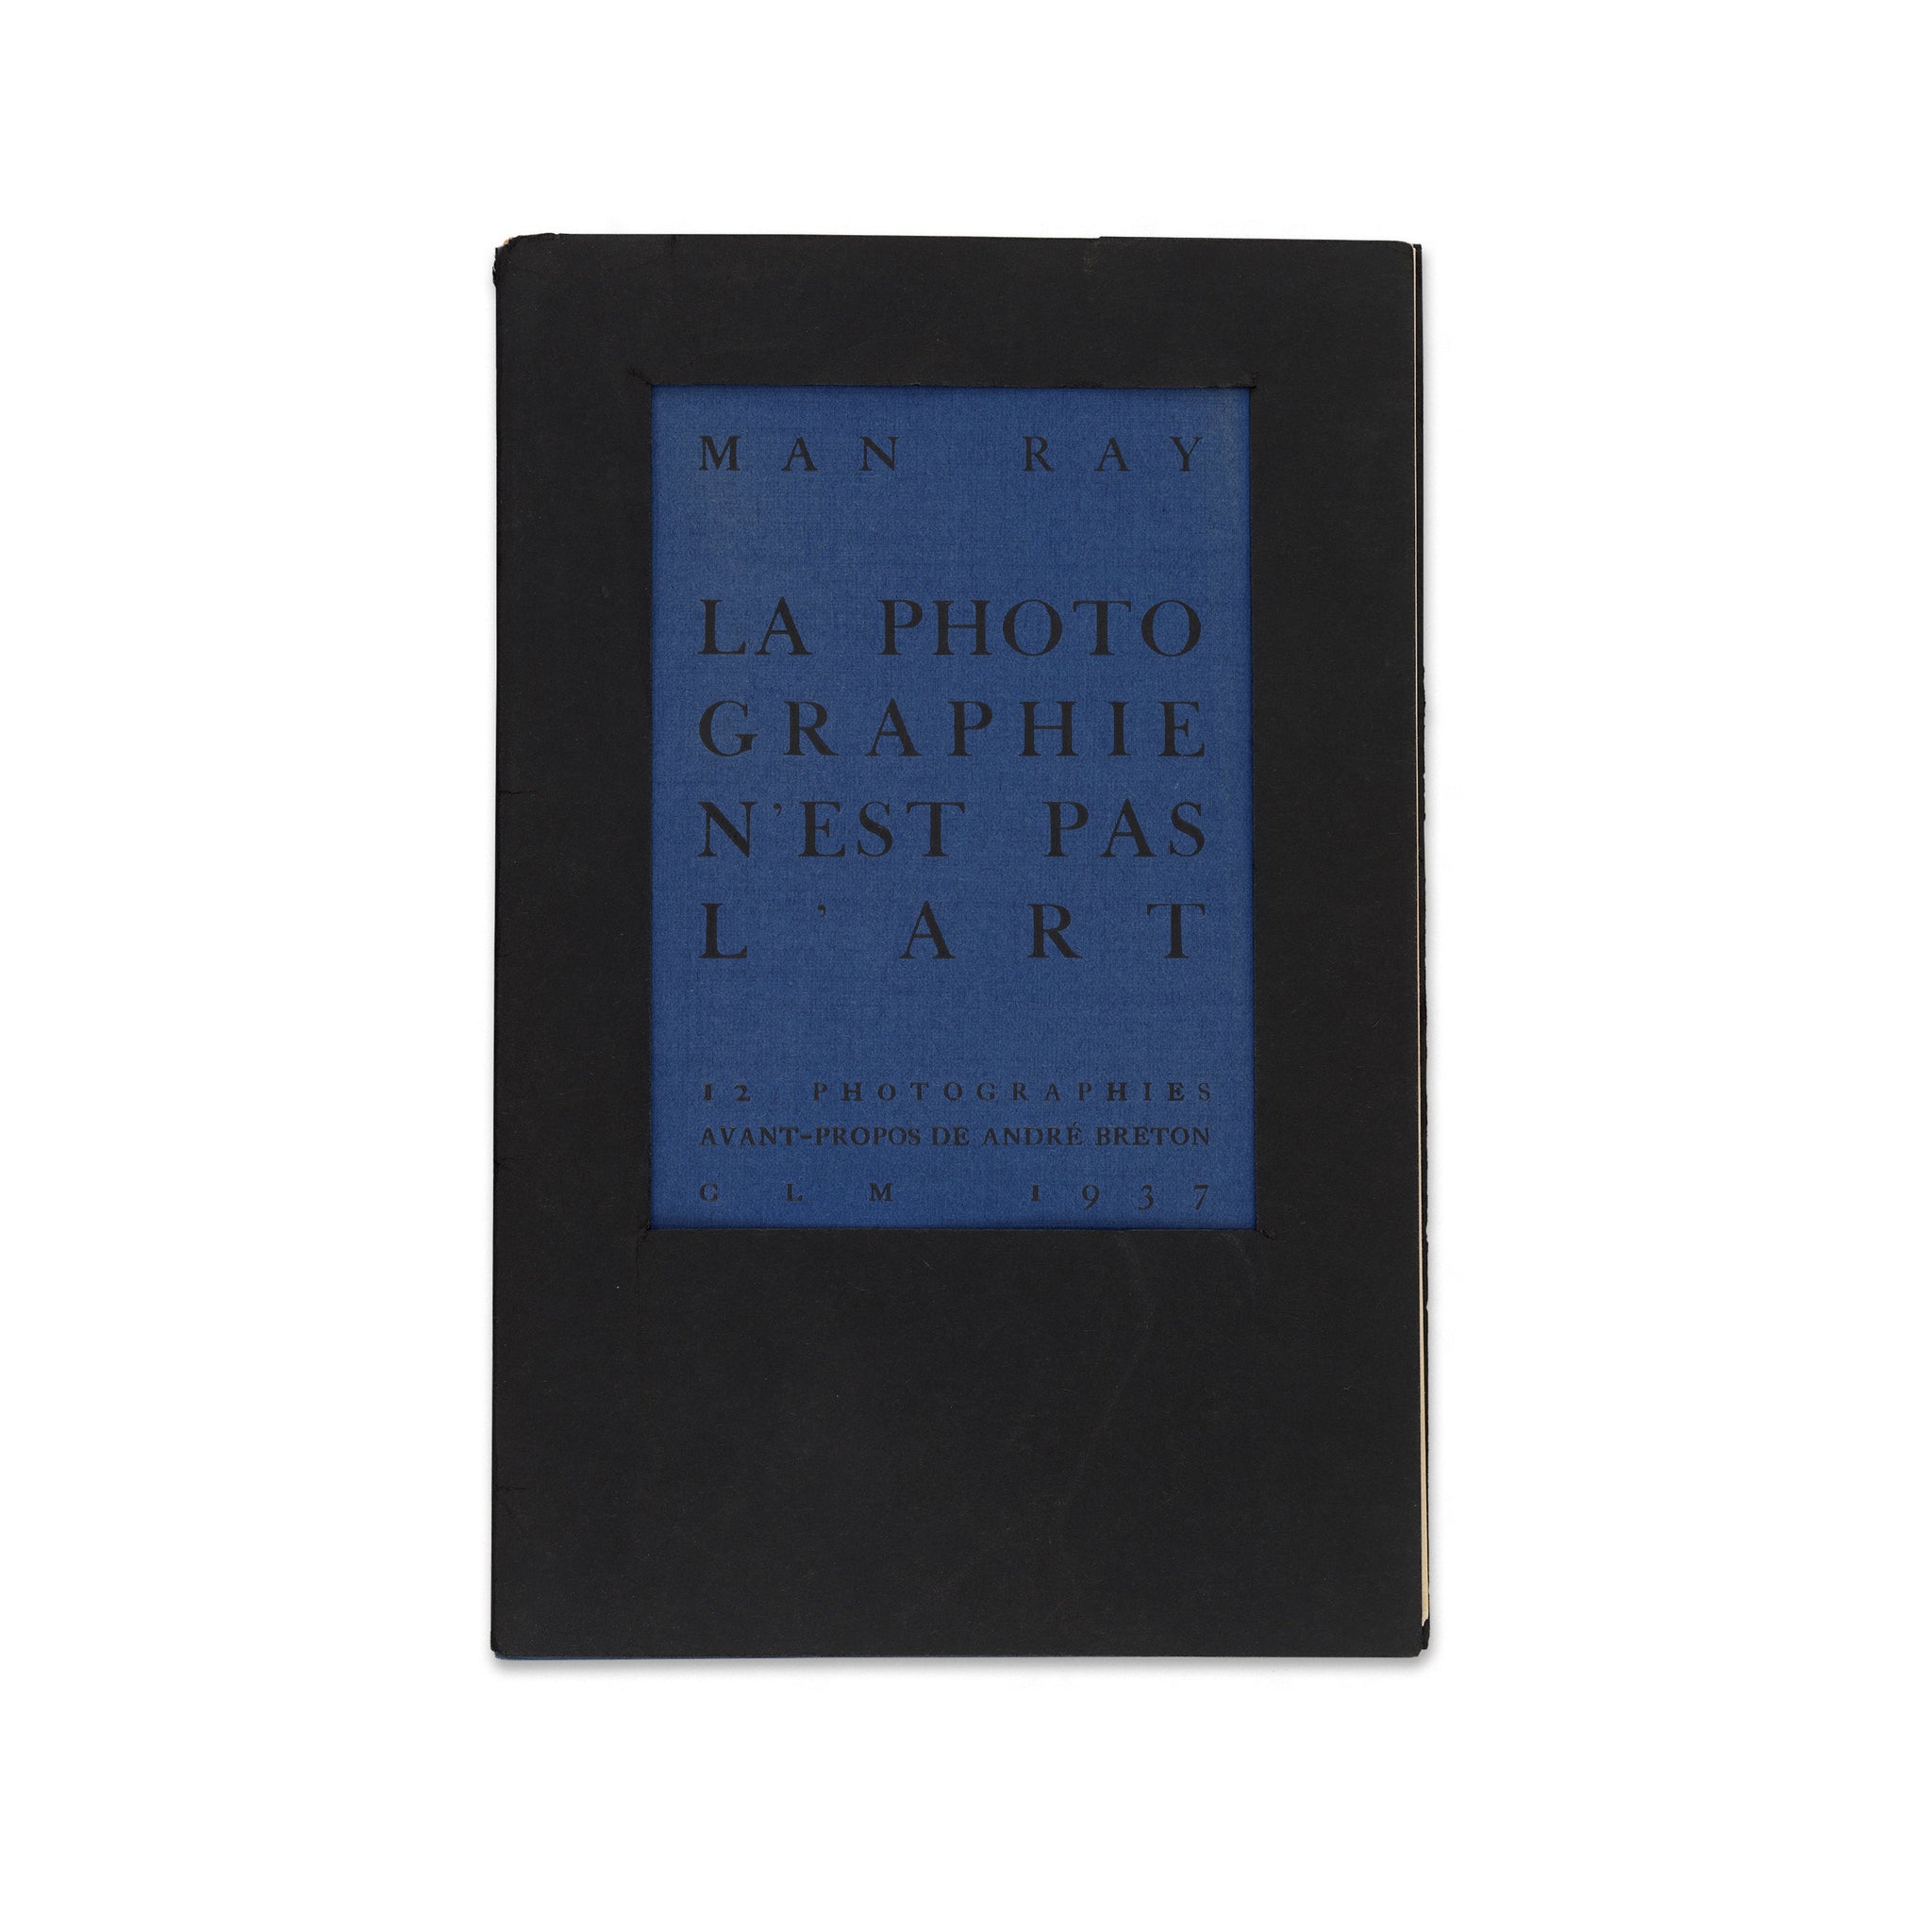 Front cover of Man Ray: La photographie n’est pas l’art rare book